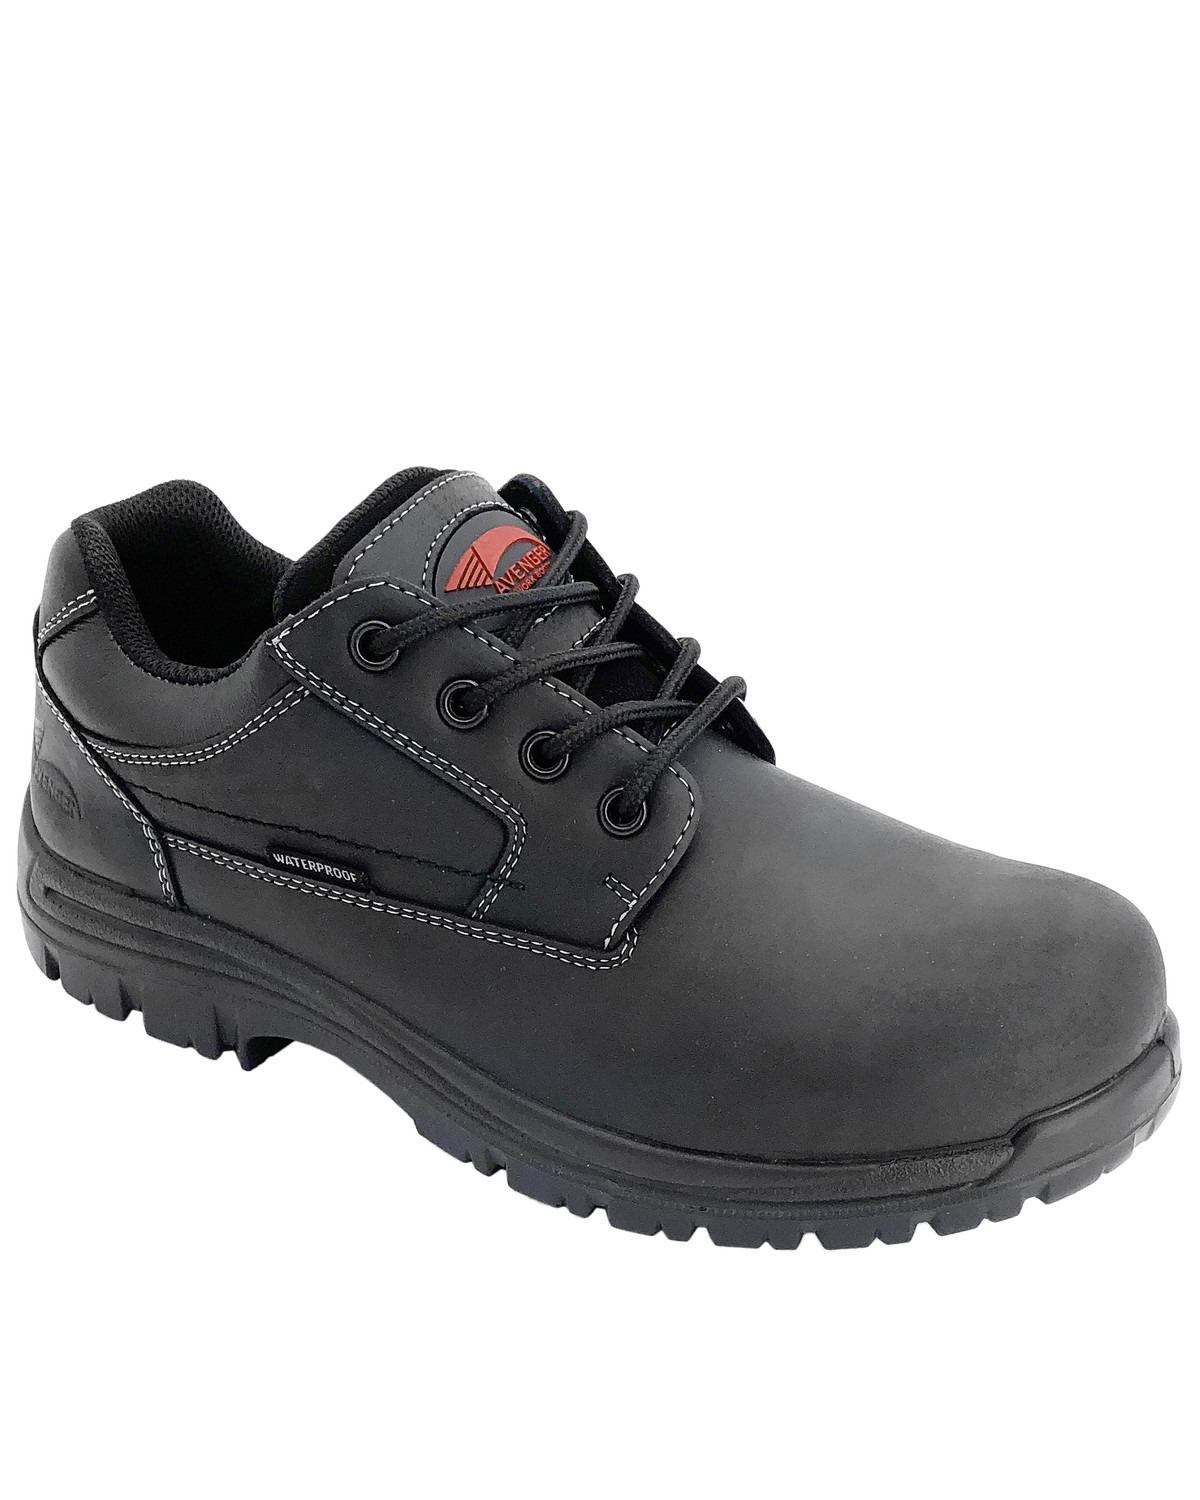 black waterproof work shoes